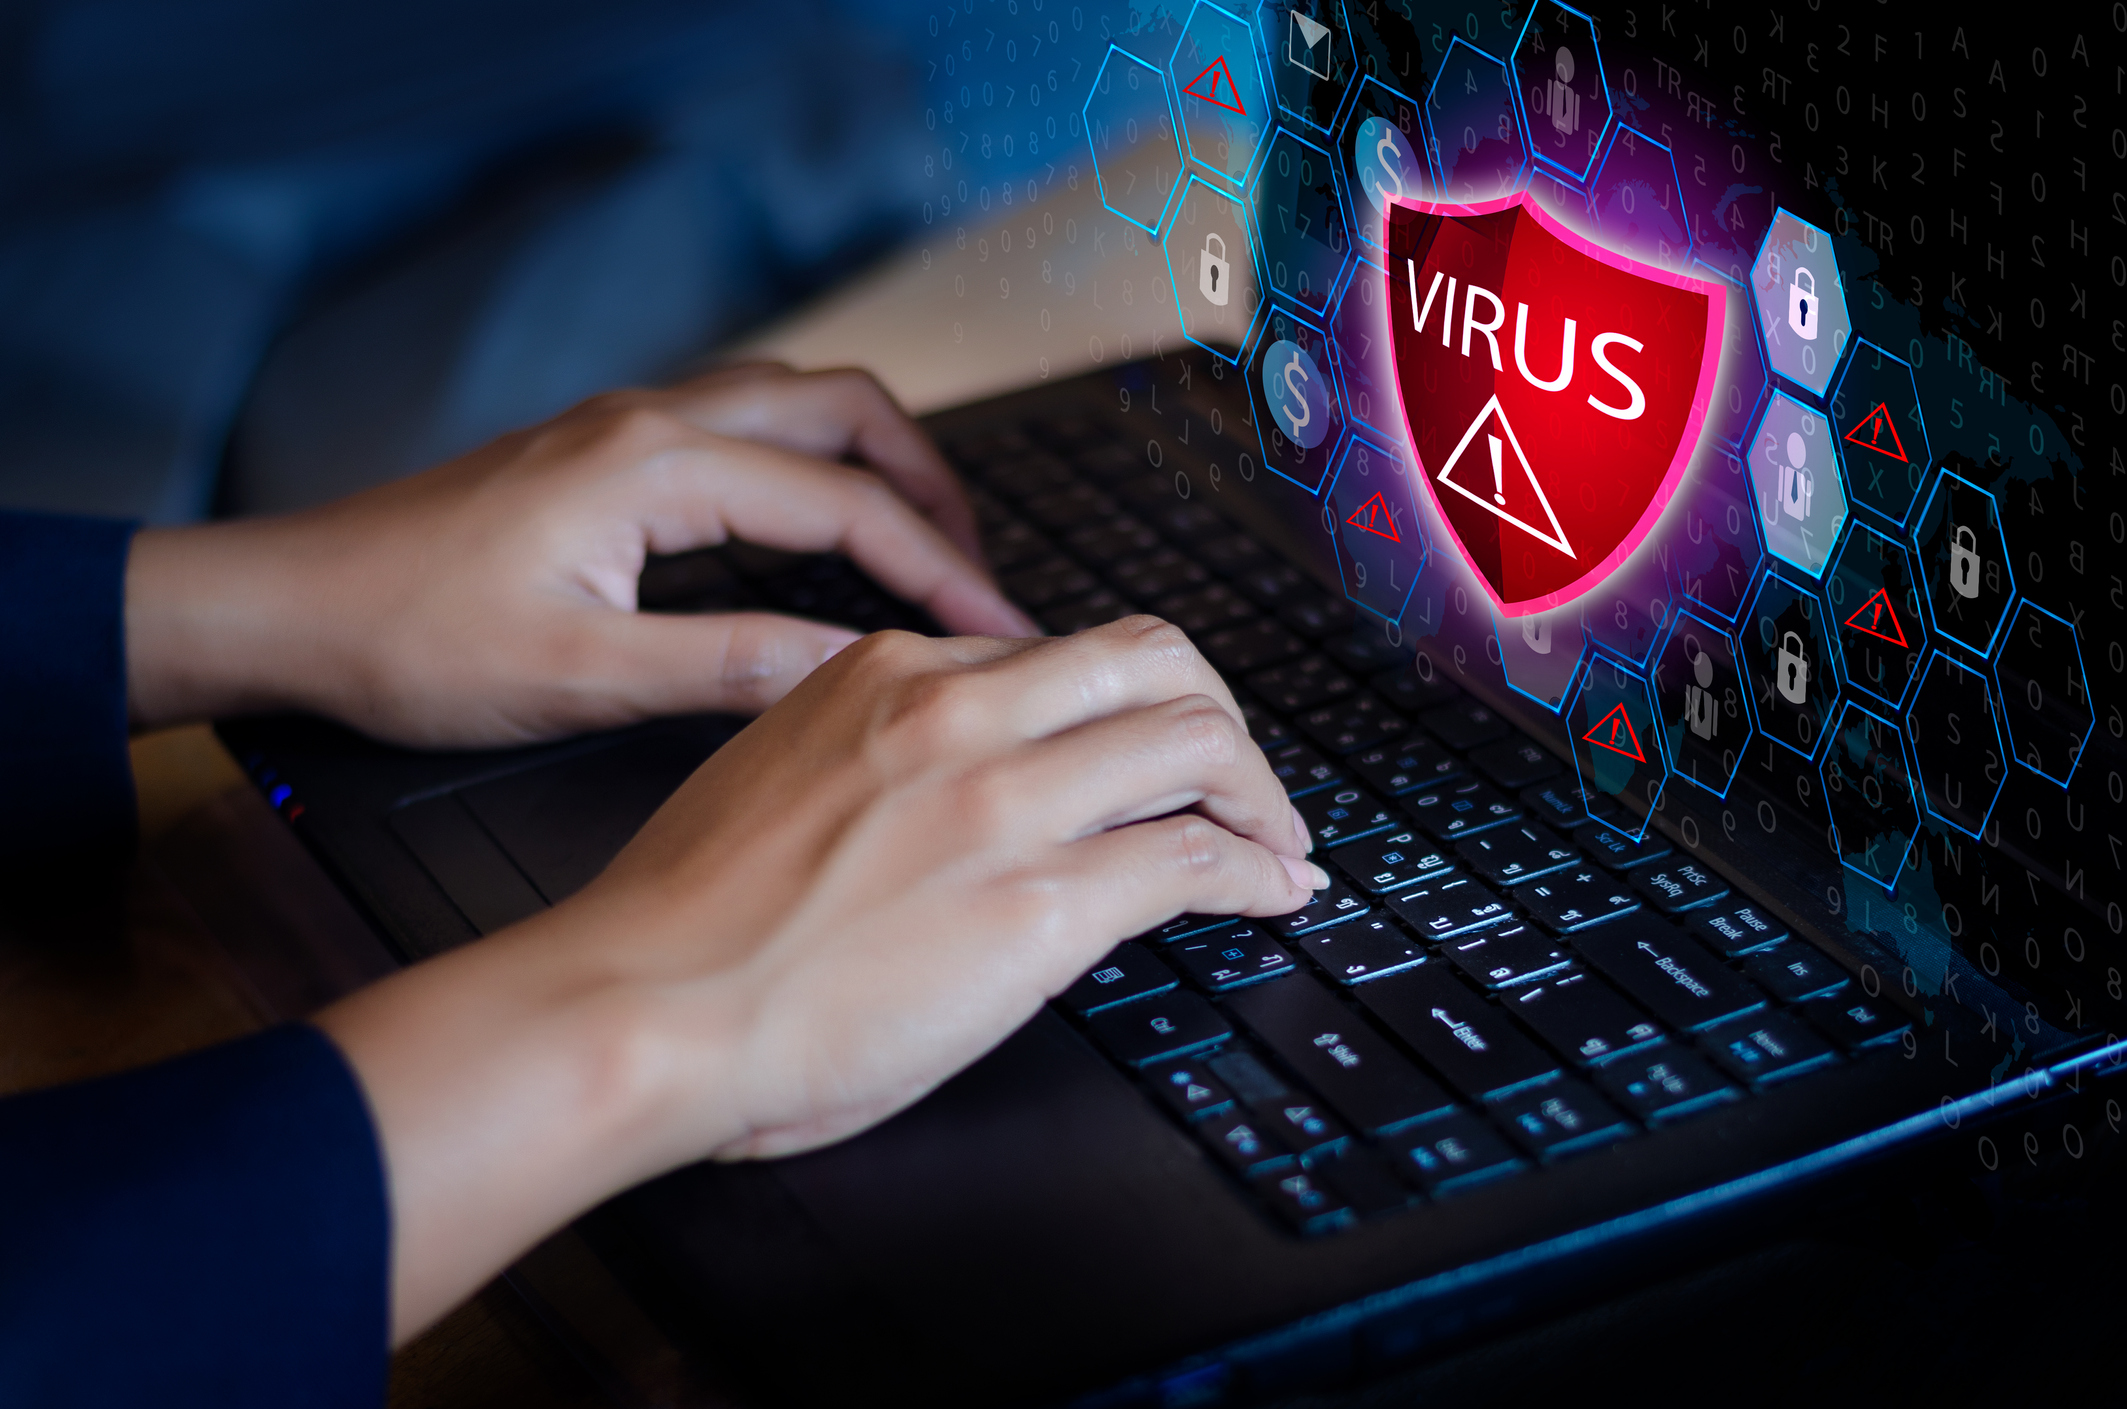 Computer virus is. Компьютерные вирусы. Компьютерные ВИРУСЫВИРУСЫ. Вирусы в интернете. Информационная безопасность.